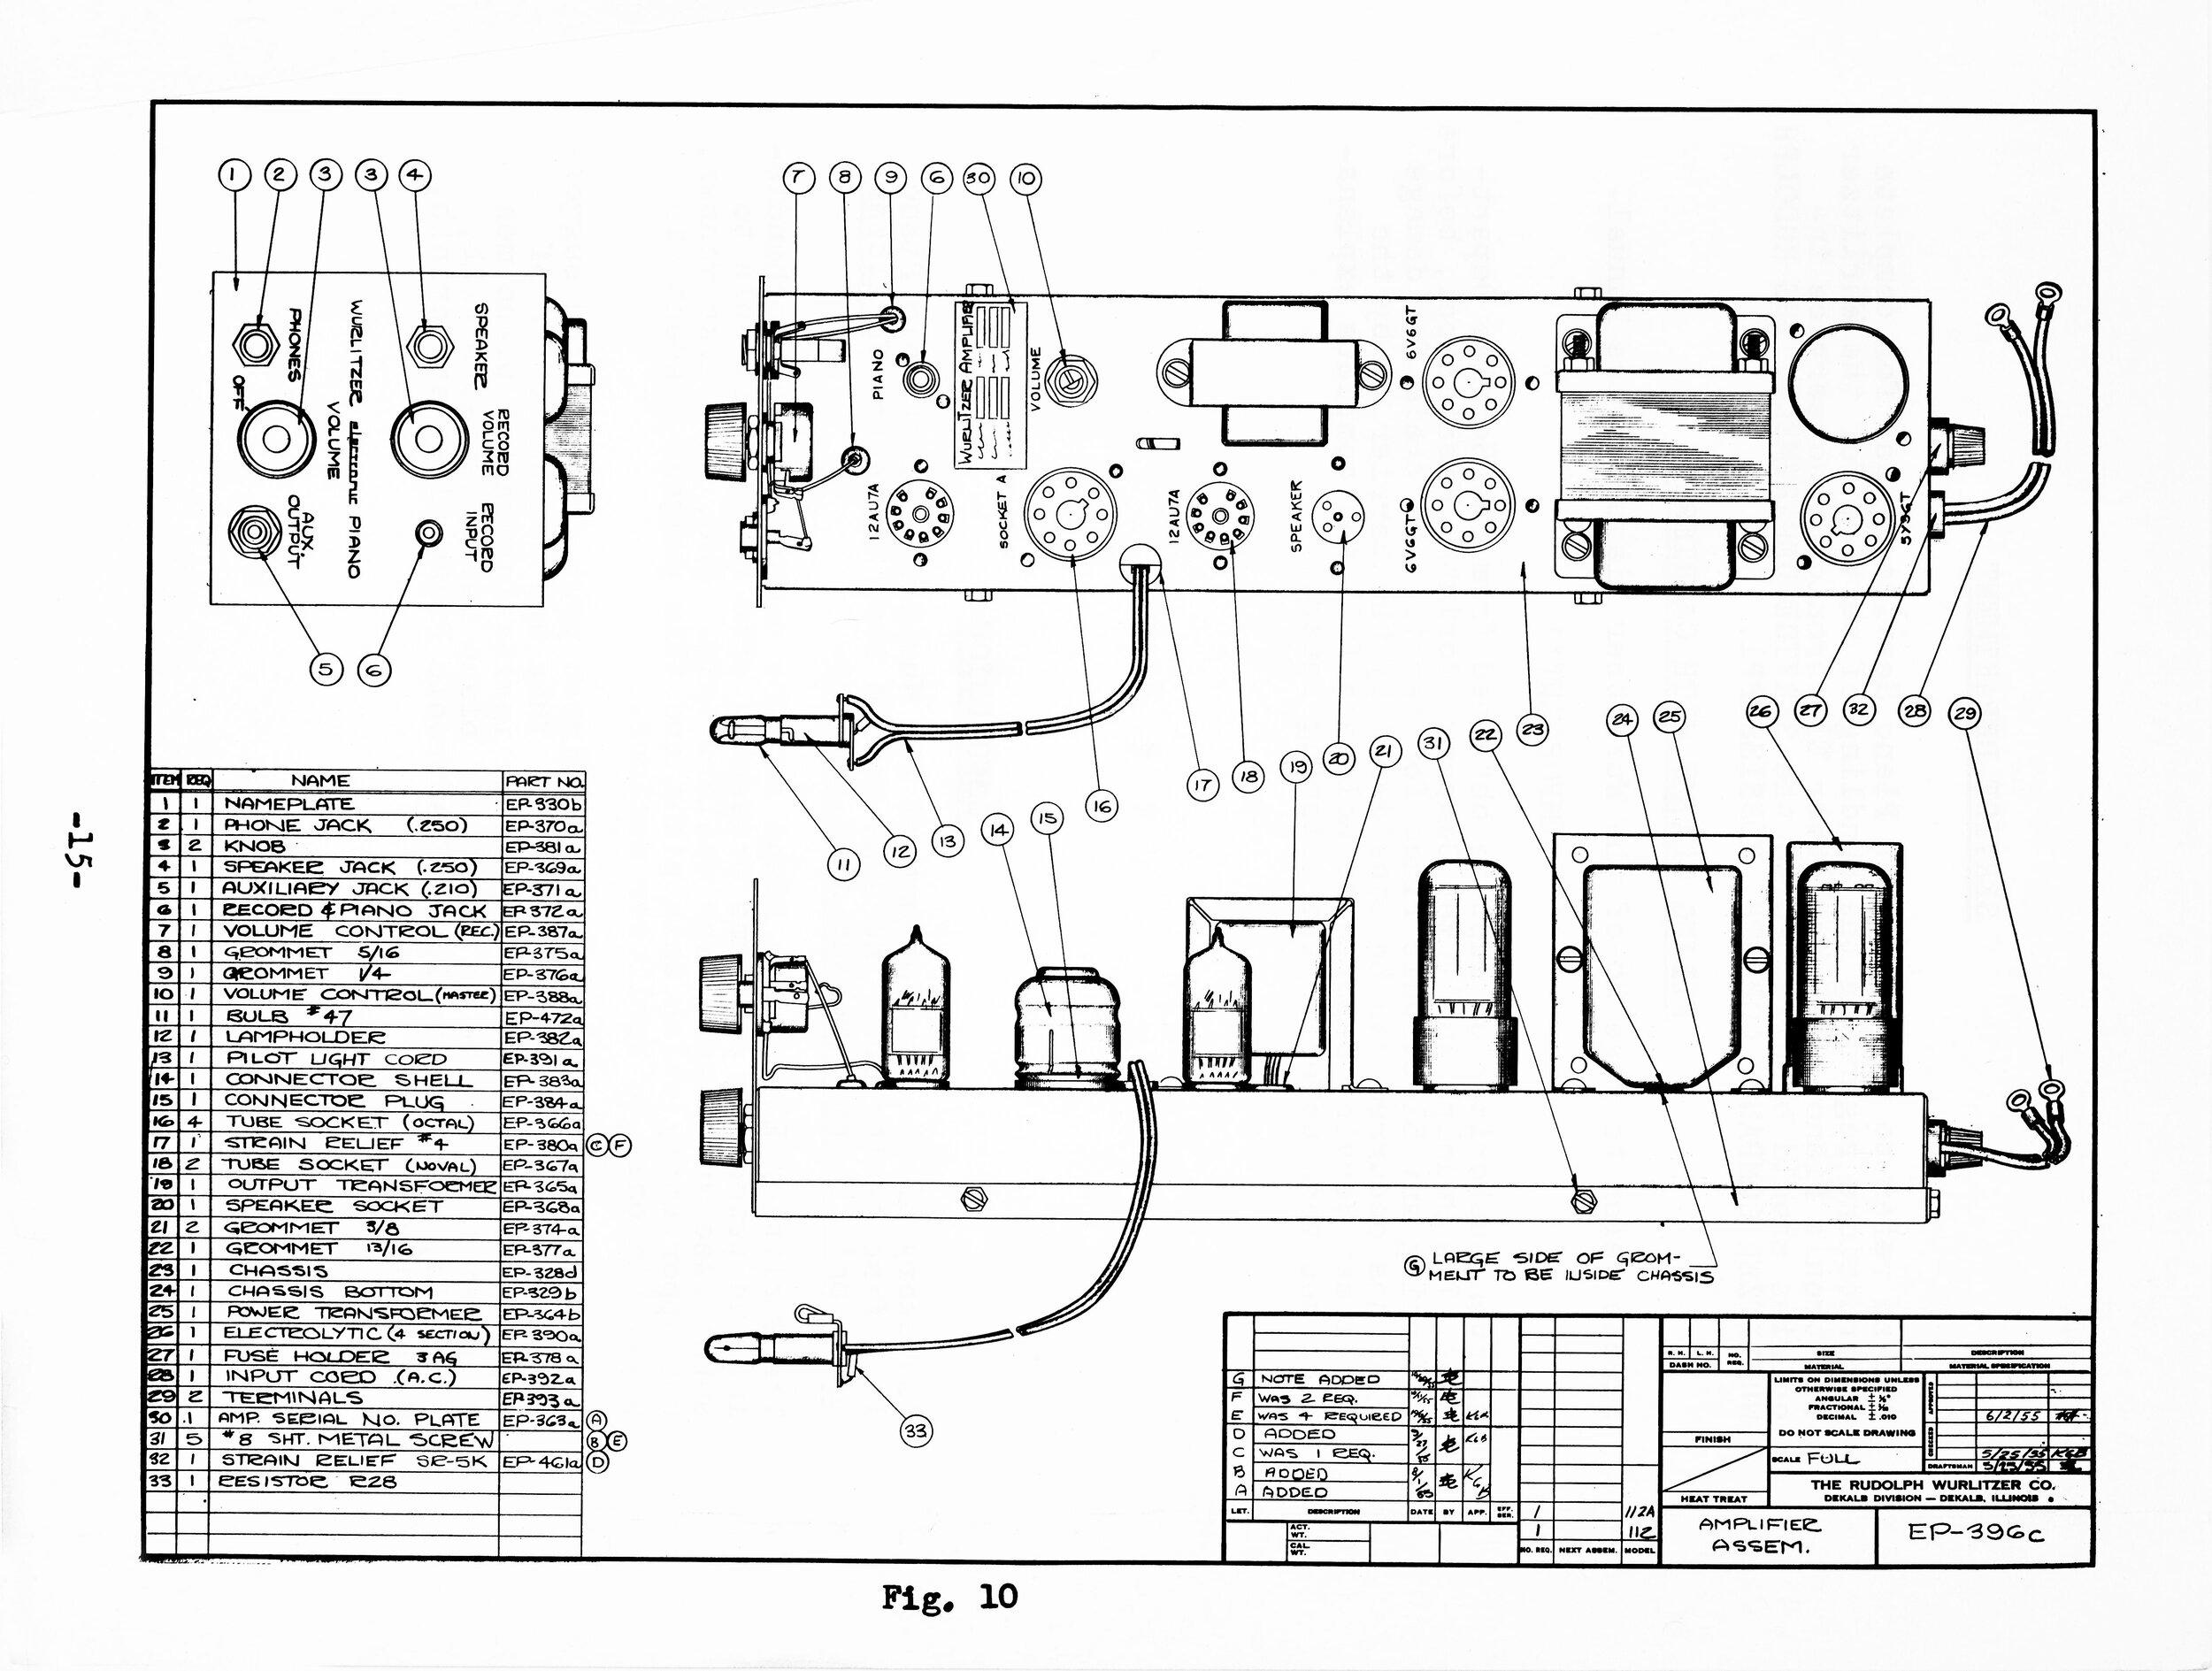 Wurlitzer 112 chassis schematic